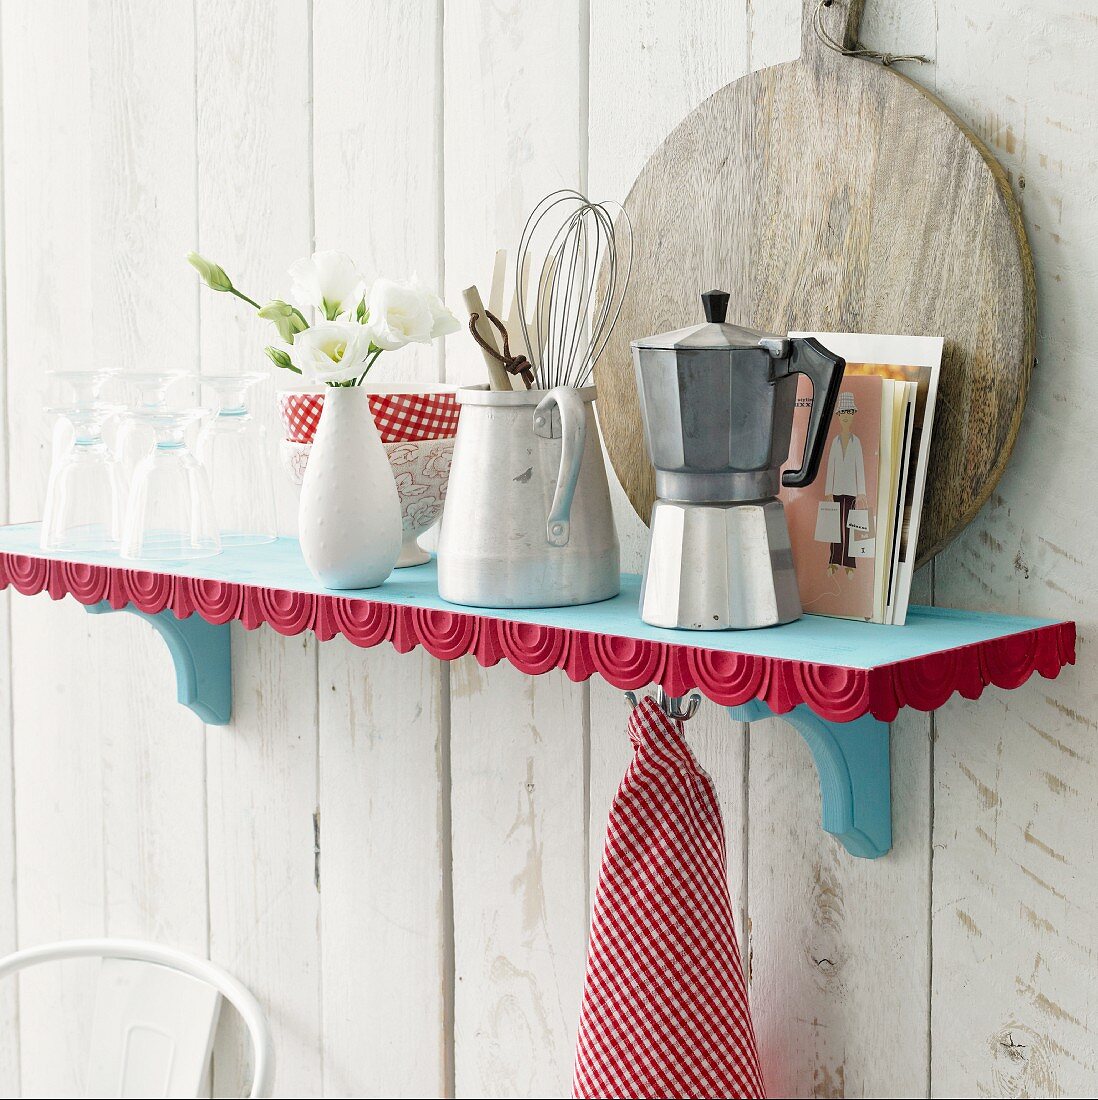 Kitchen utensils on blue shelf with red decorative trim